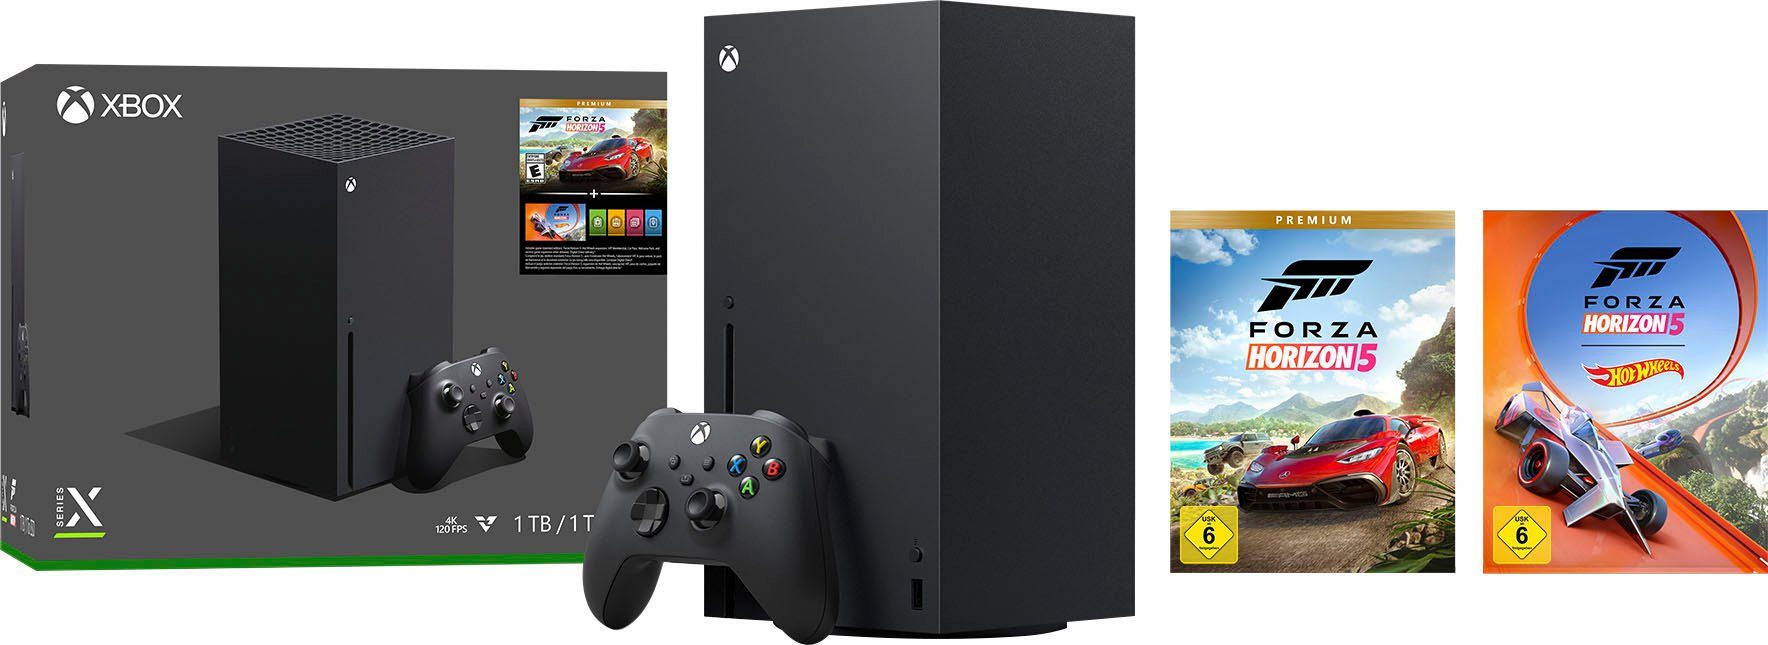 Xbox Series X – Forza Horizon 5 Premium Edition Bundle